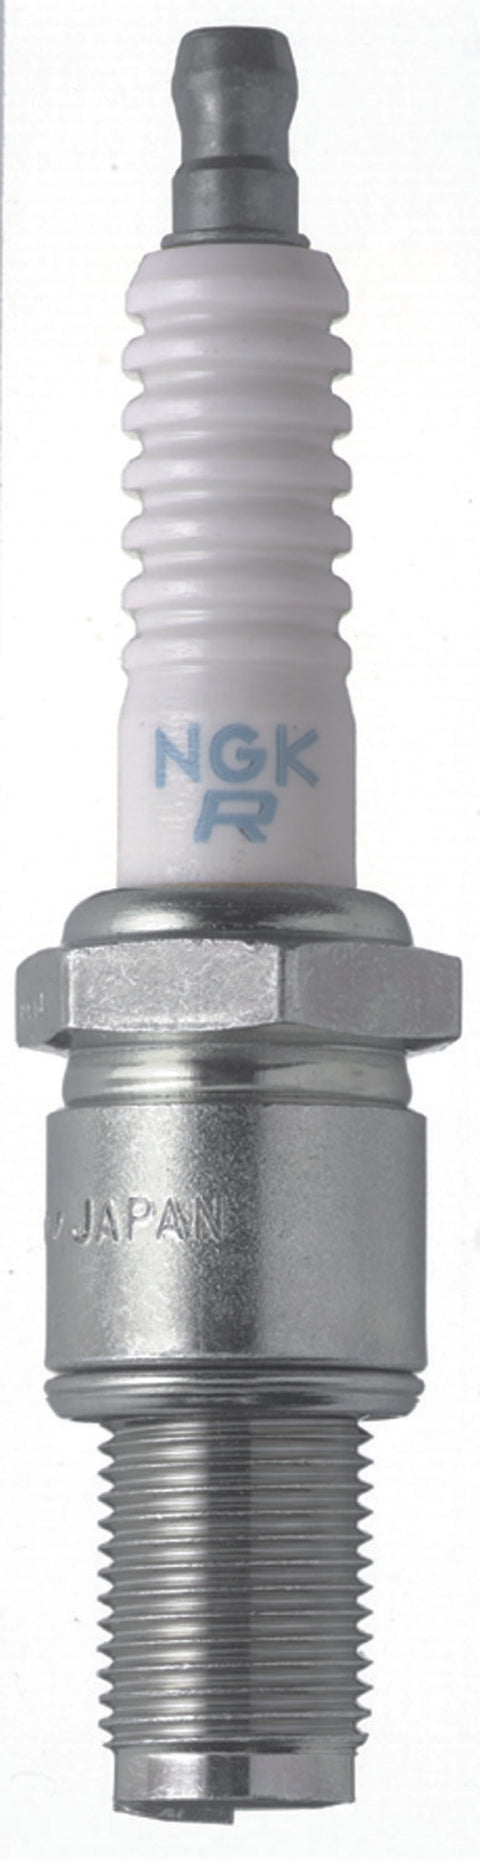 NGK Racing .5 Spark Plug Box of 4 (R6725-105)